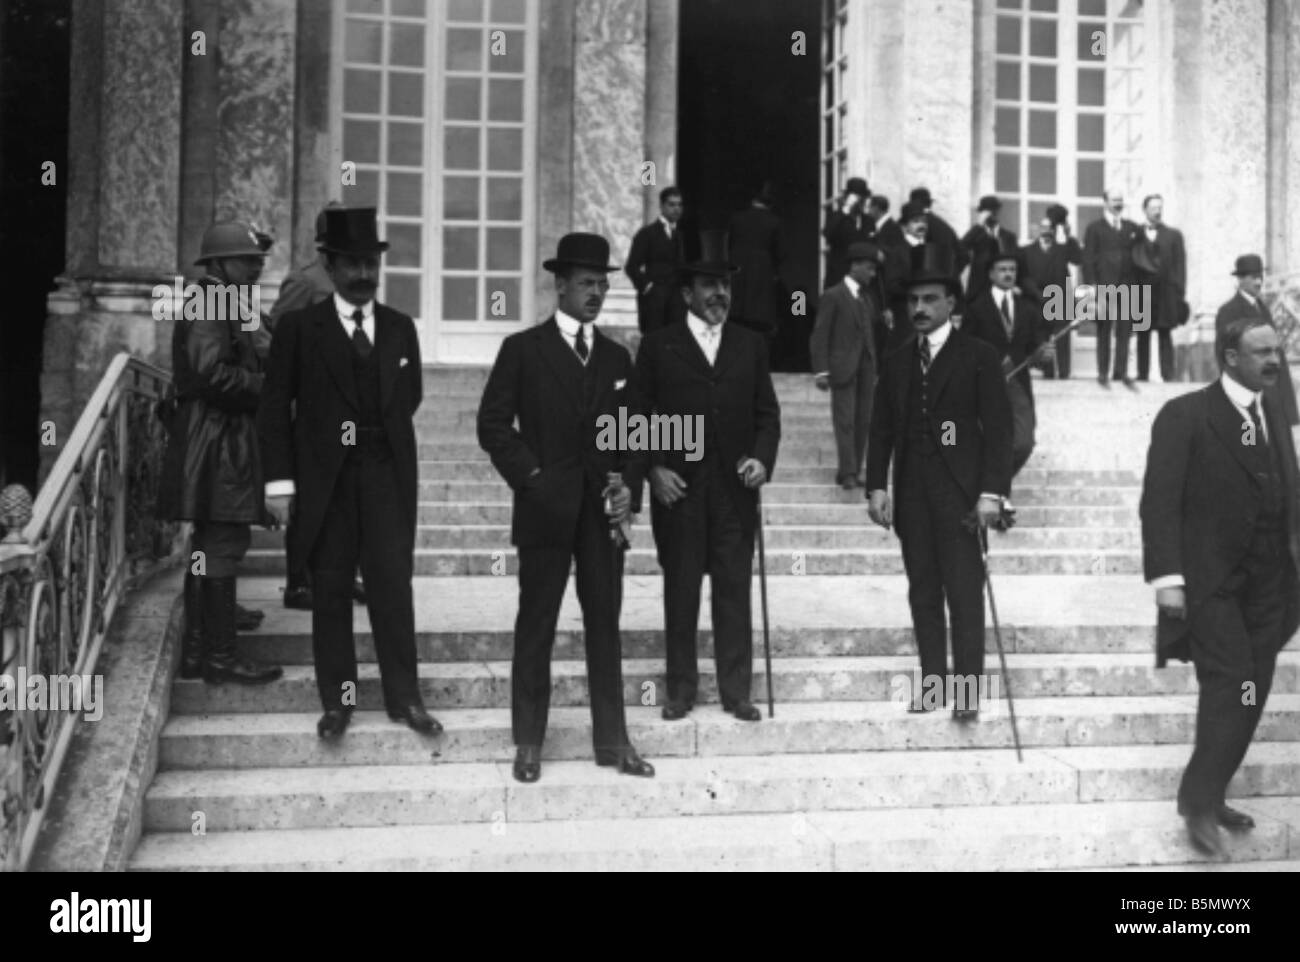 9UN 1920 6 4 A1 2 E Frieden Vertrag von Trianon 1920 Foto Frieden Vertrag von Trianon 4. Juni 1920 Vertrag zwischen Ungarn und der Alli Stockfoto